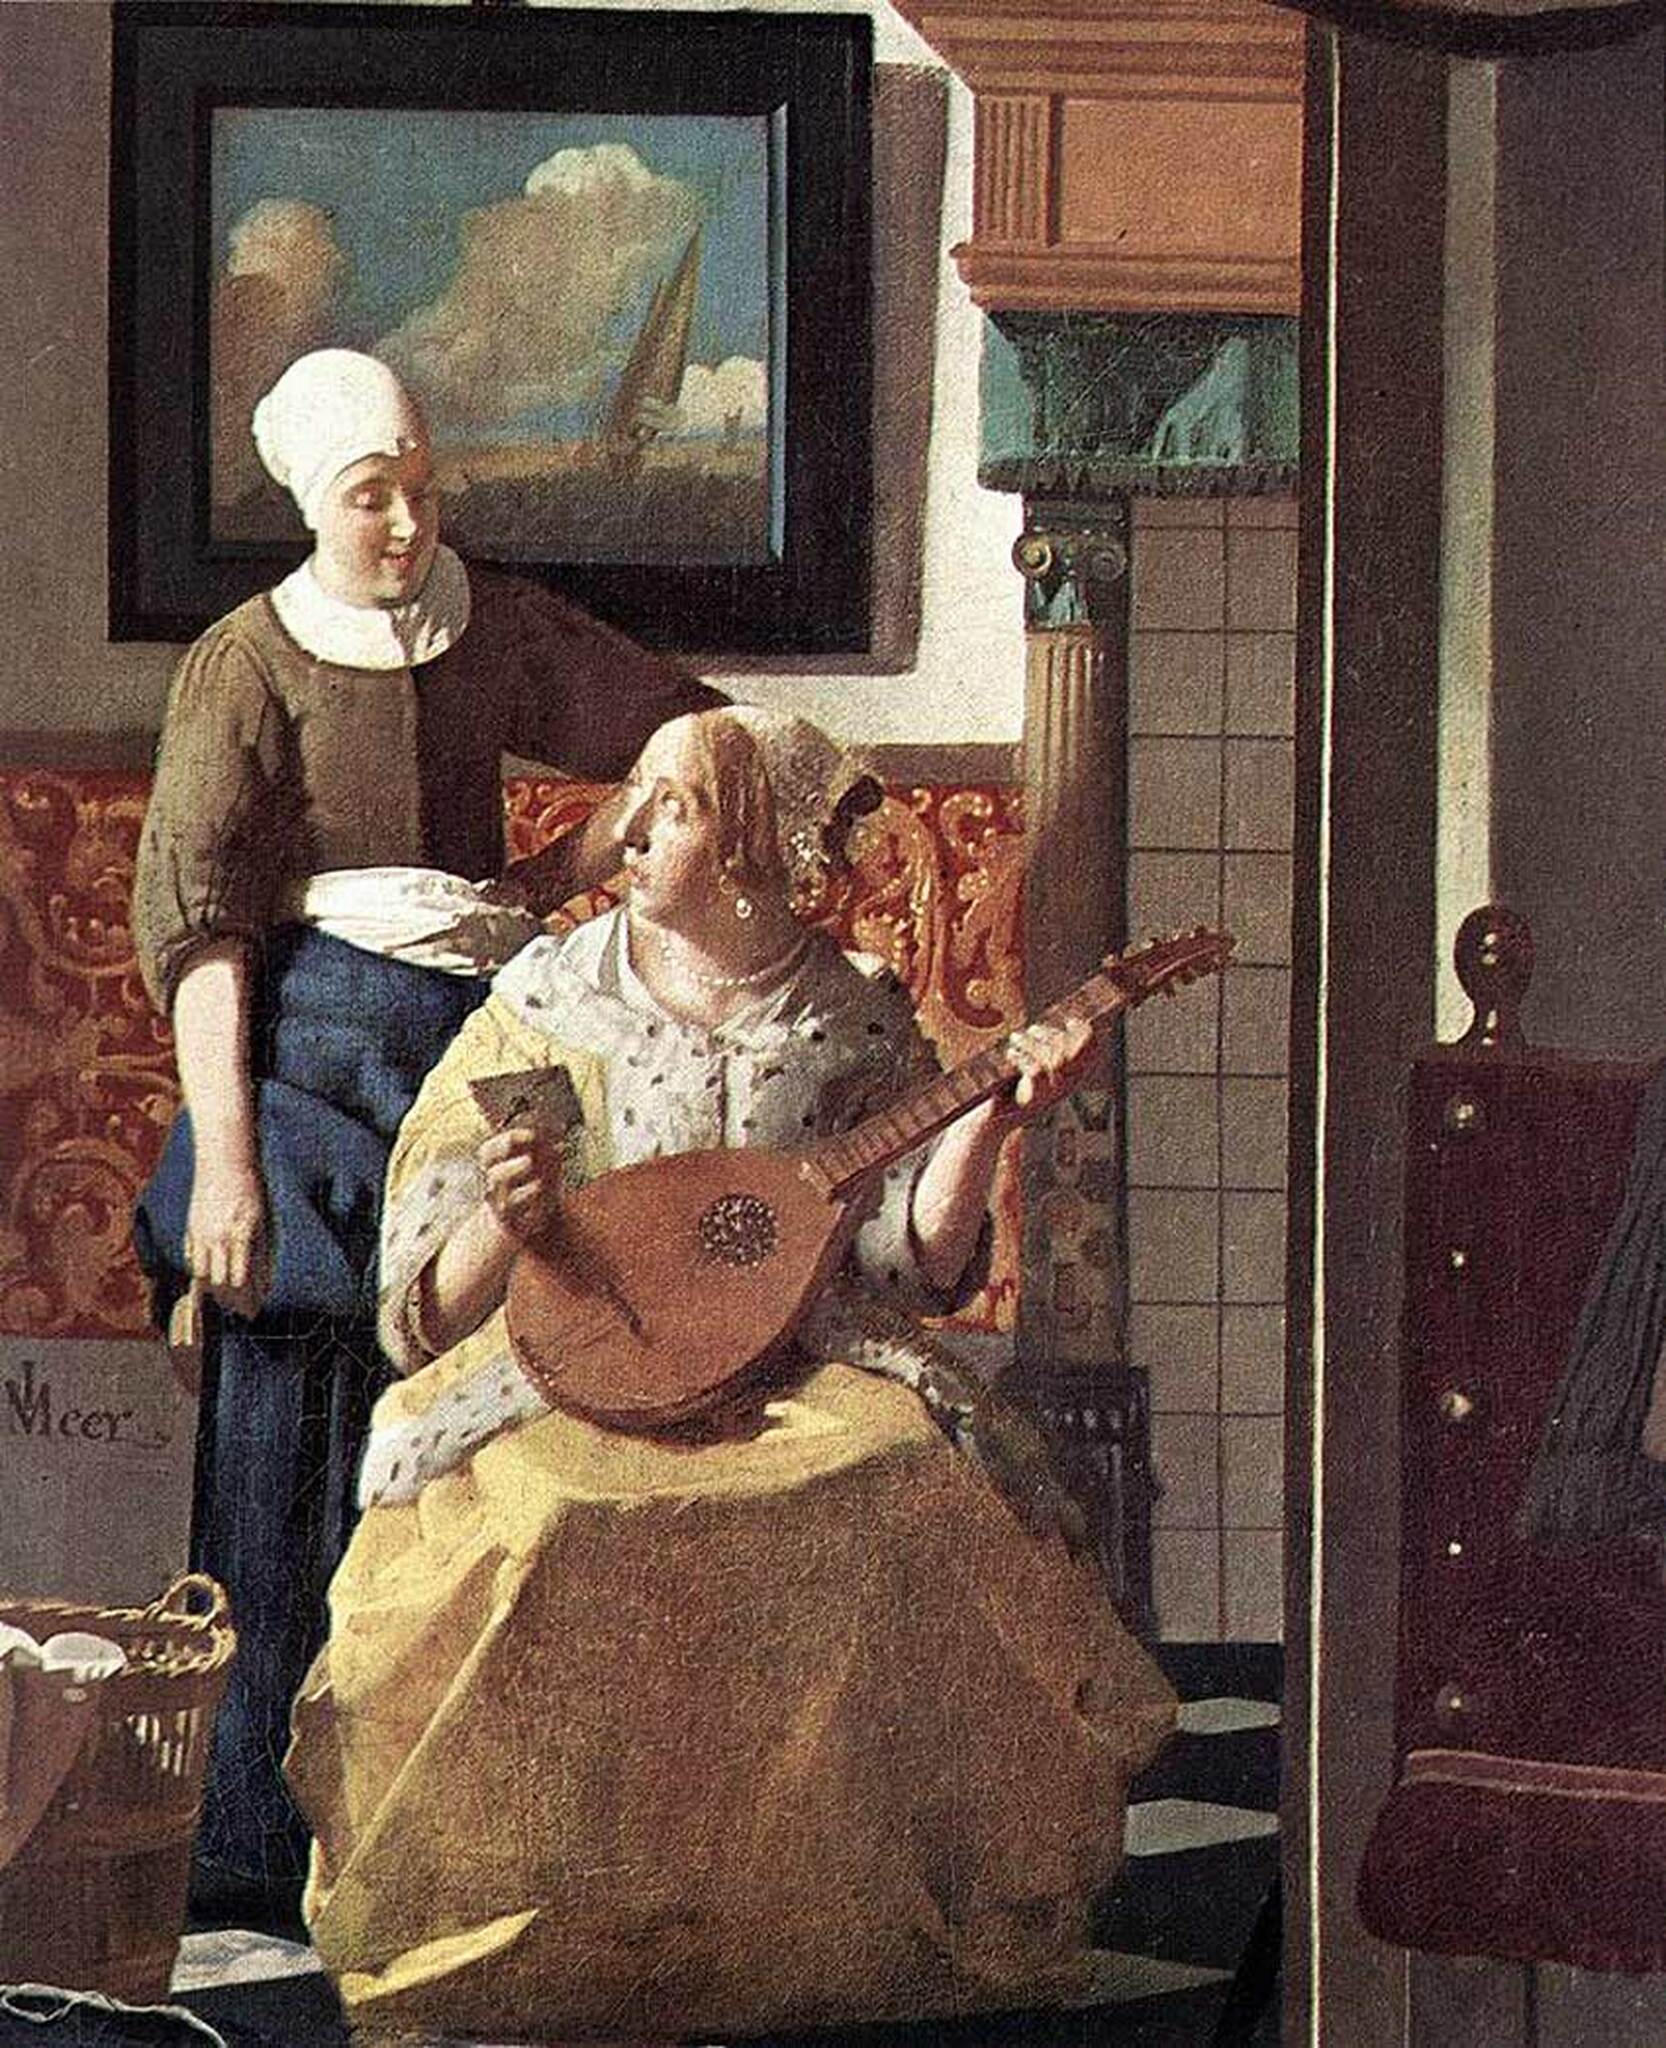 Le détaill de la Lettre d'amour (Vermeer) - Johannes Vermeer